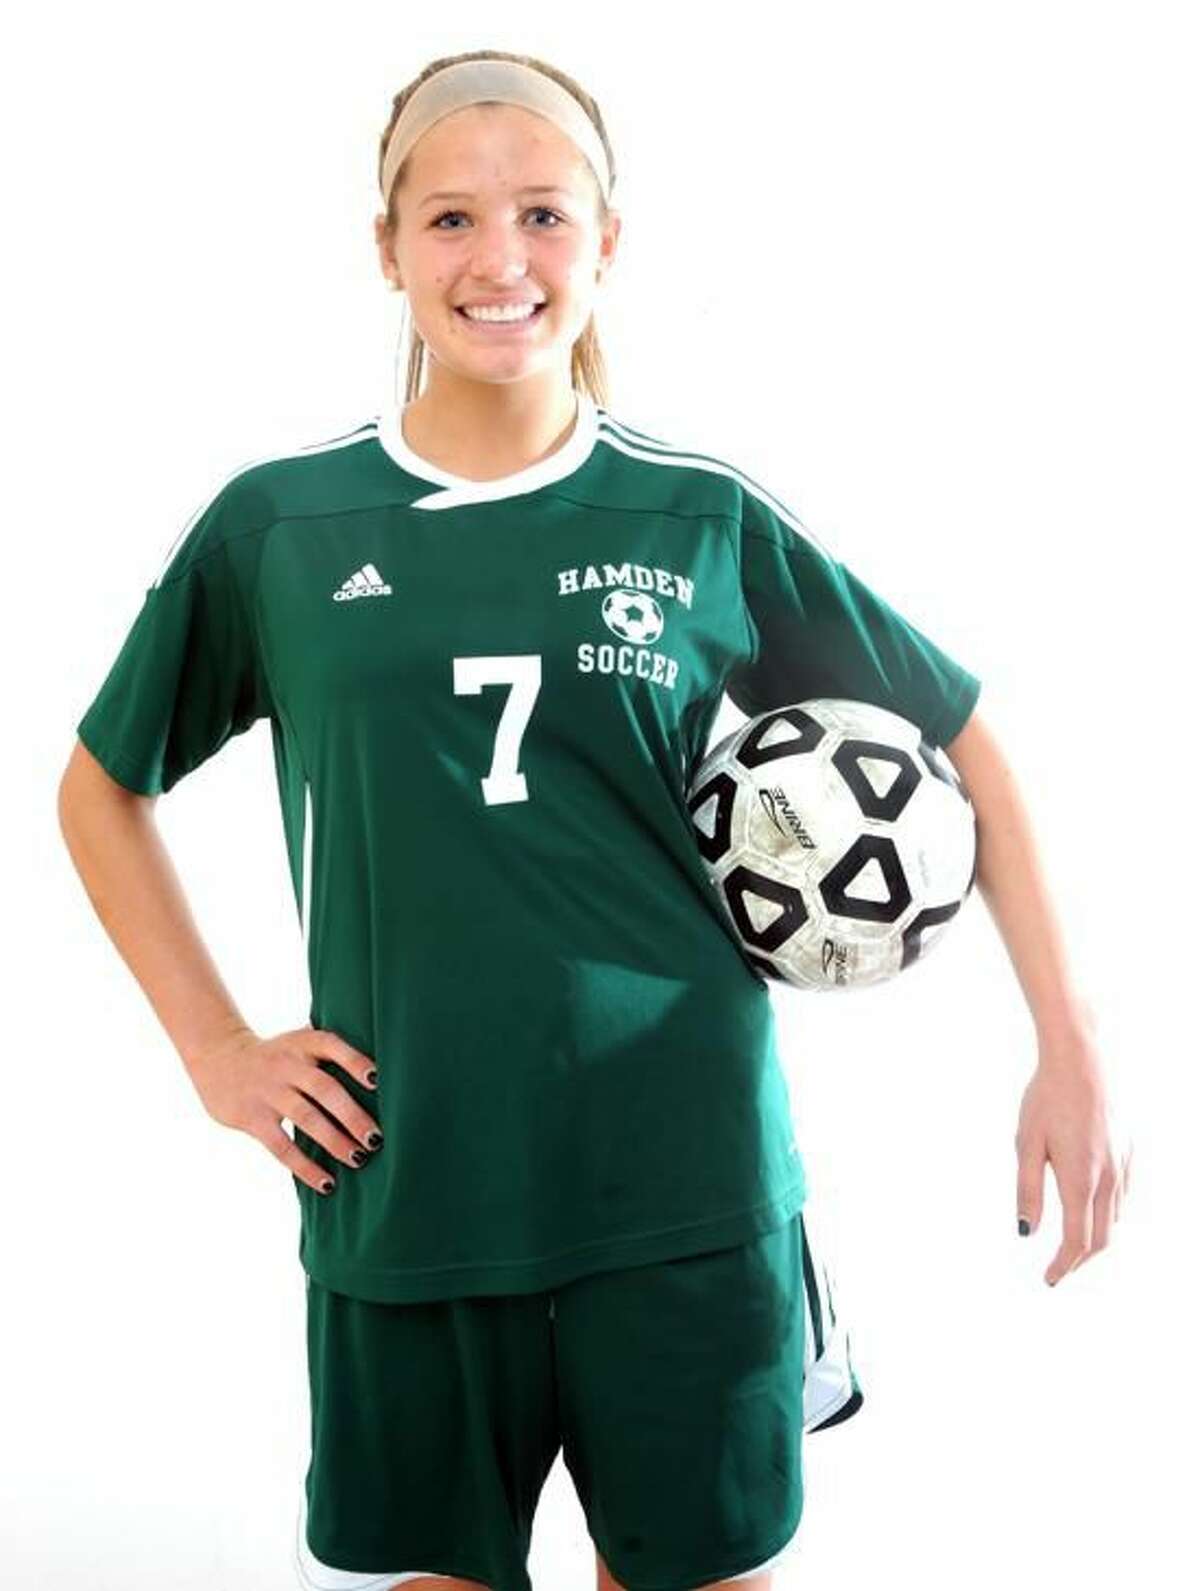 Rachel Ugolik of Hamden soccer, All-Area MVP. (Peter Hvizdak/Register)